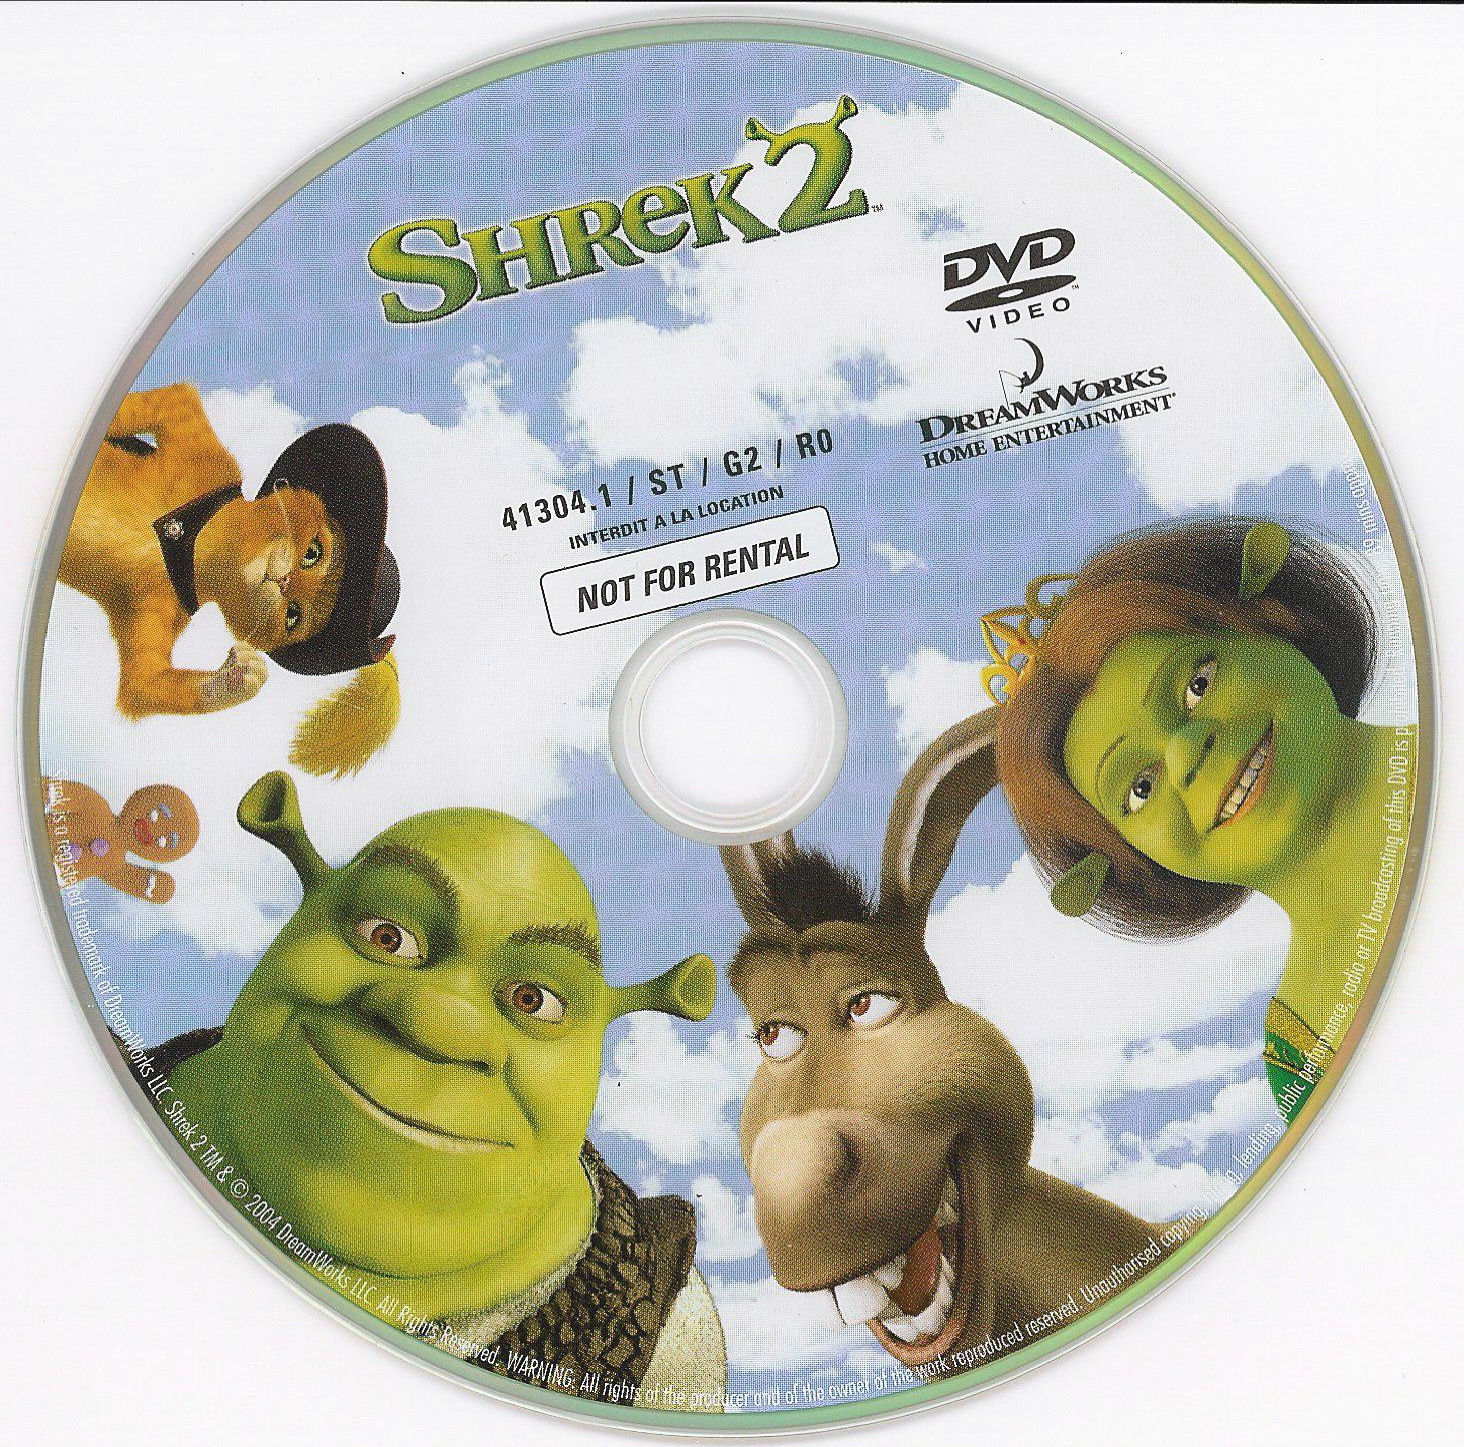 Shrek 2 v2